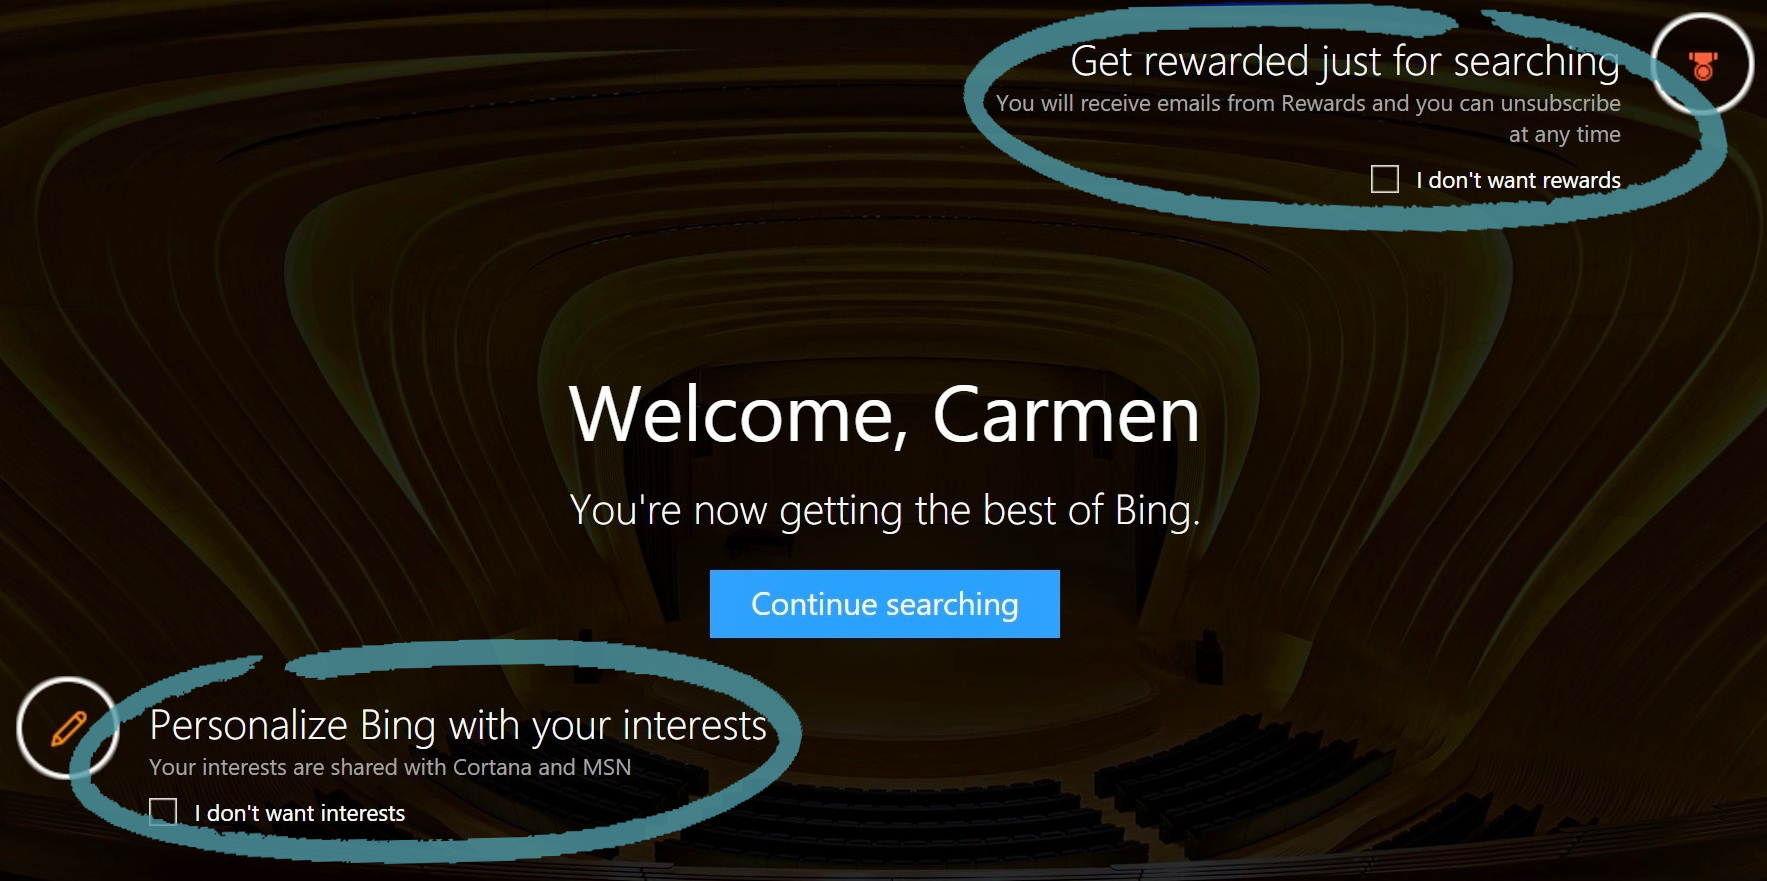 Startsidan för Bing, med möjlighet att anmäla sig till Rewards och intressen